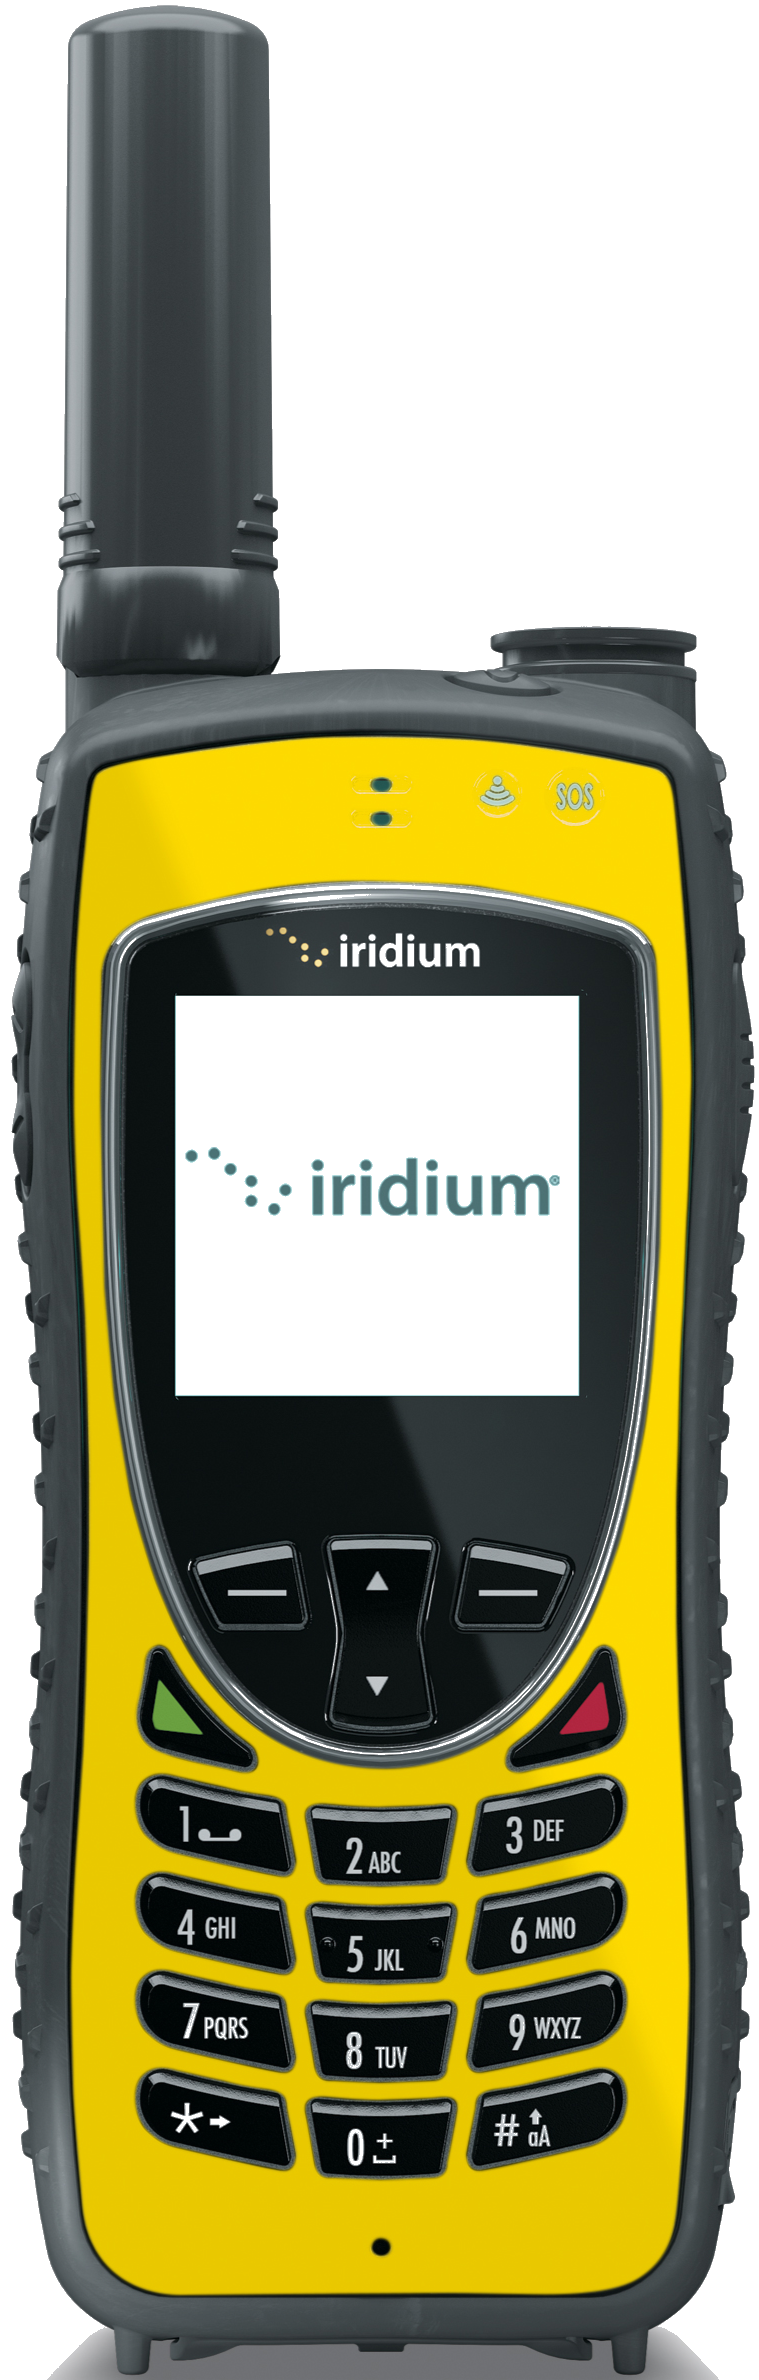 Iridium-Extreme_Safety-Yellow